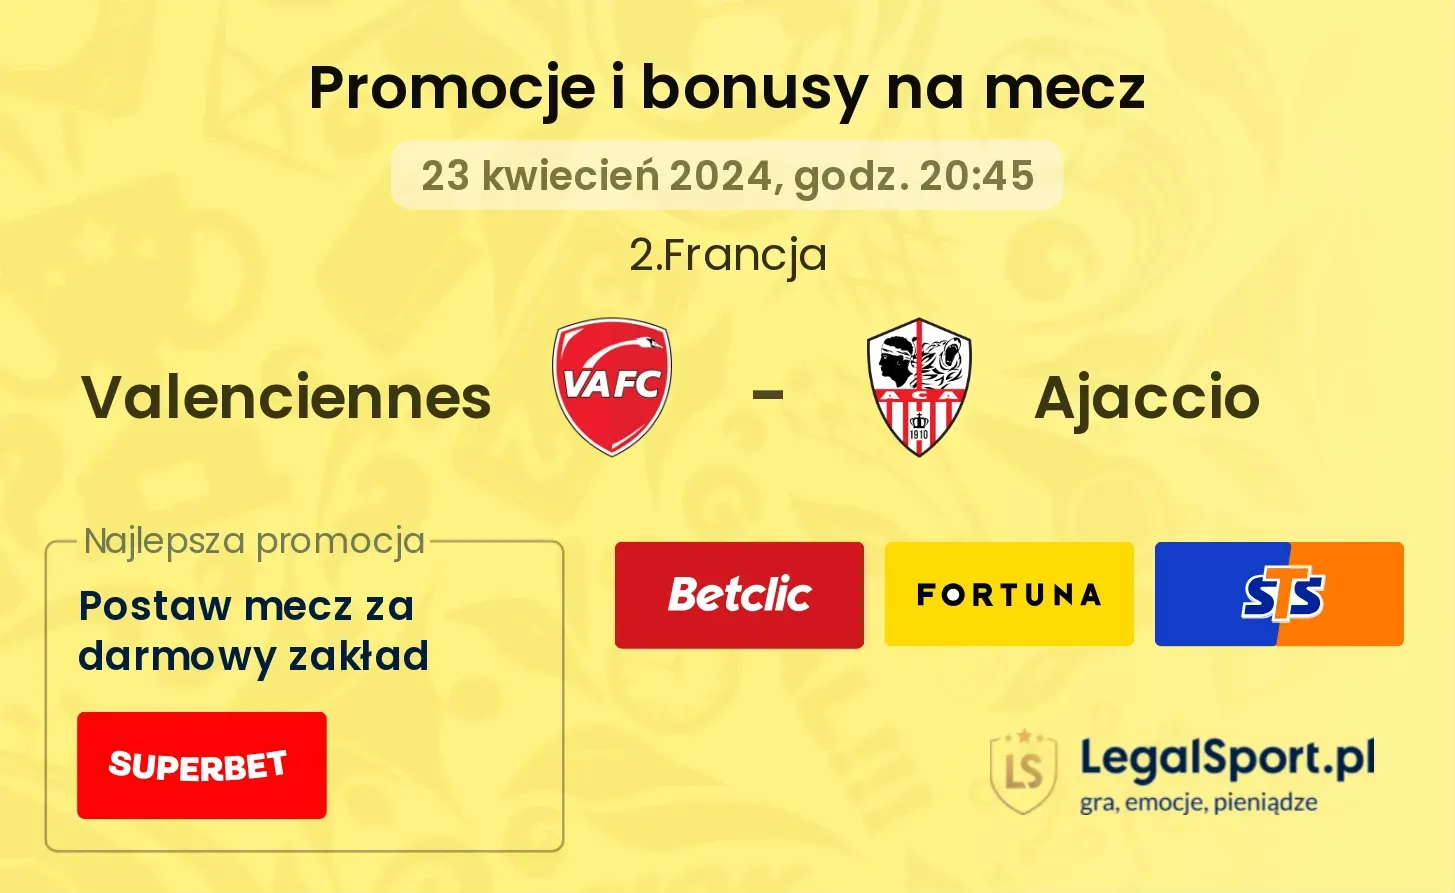 Valenciennes - Ajaccio promocje bonusy na mecz